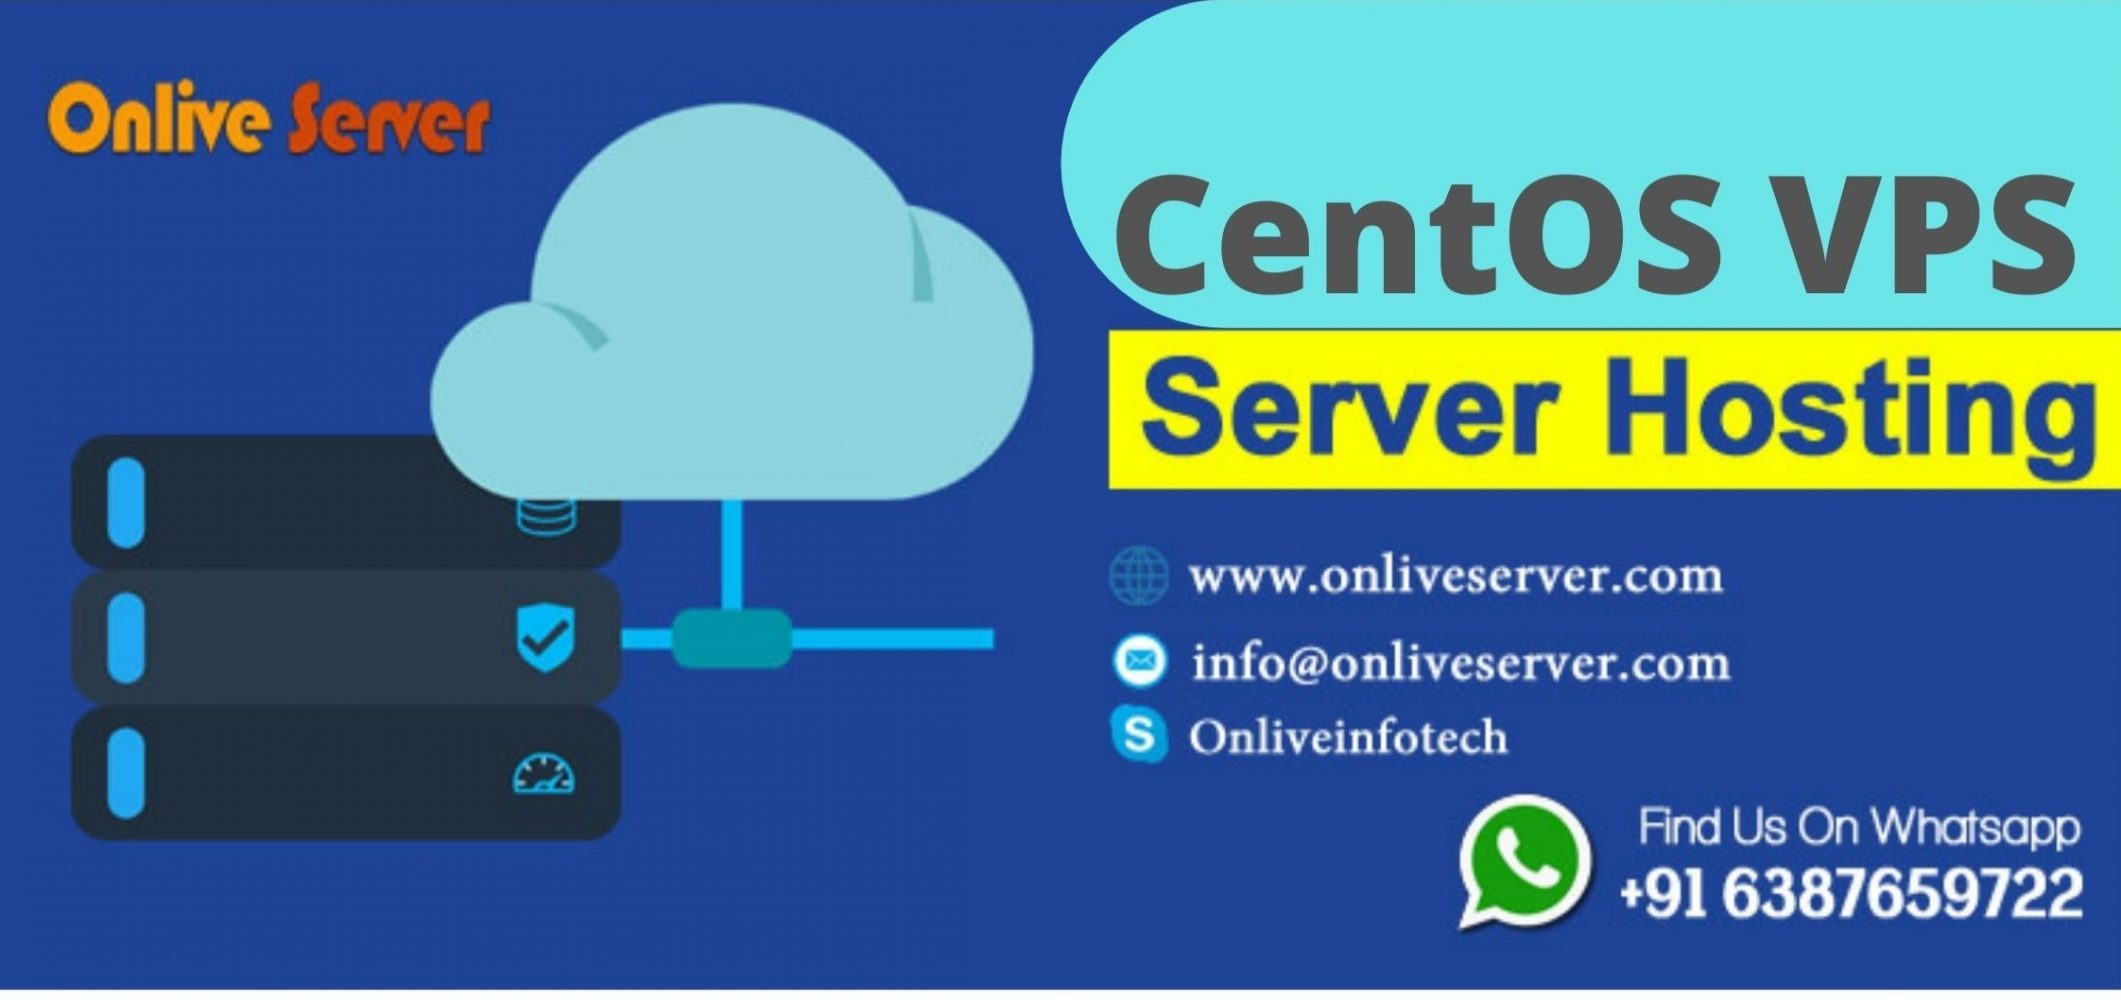 CentOS VPS Server Hosting From Onlive Server